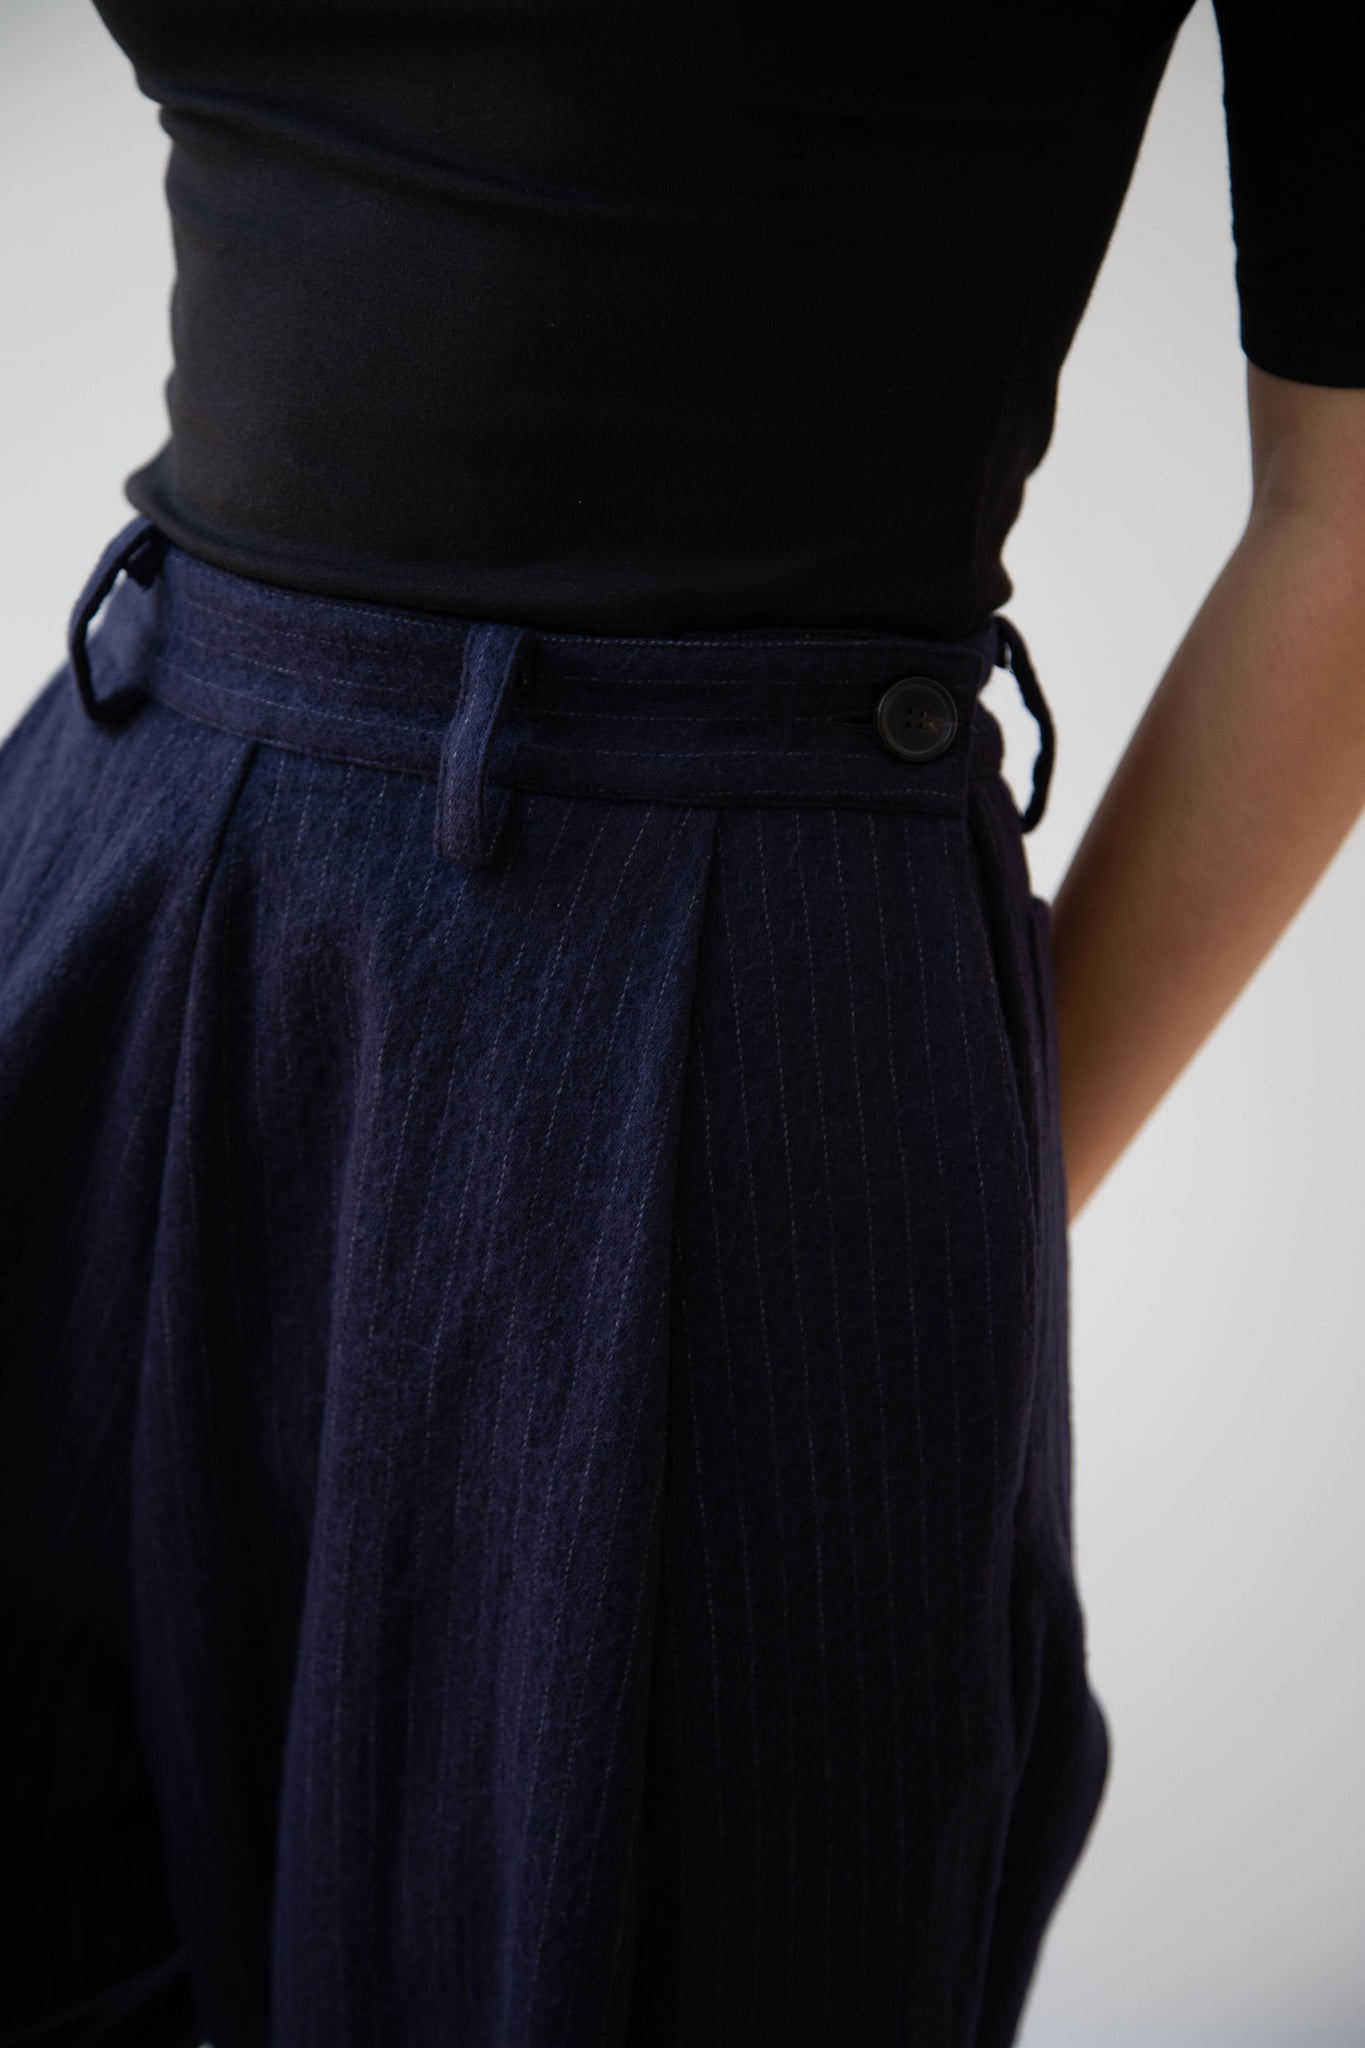 Cawley | Georgia Trousers in Pinstripe